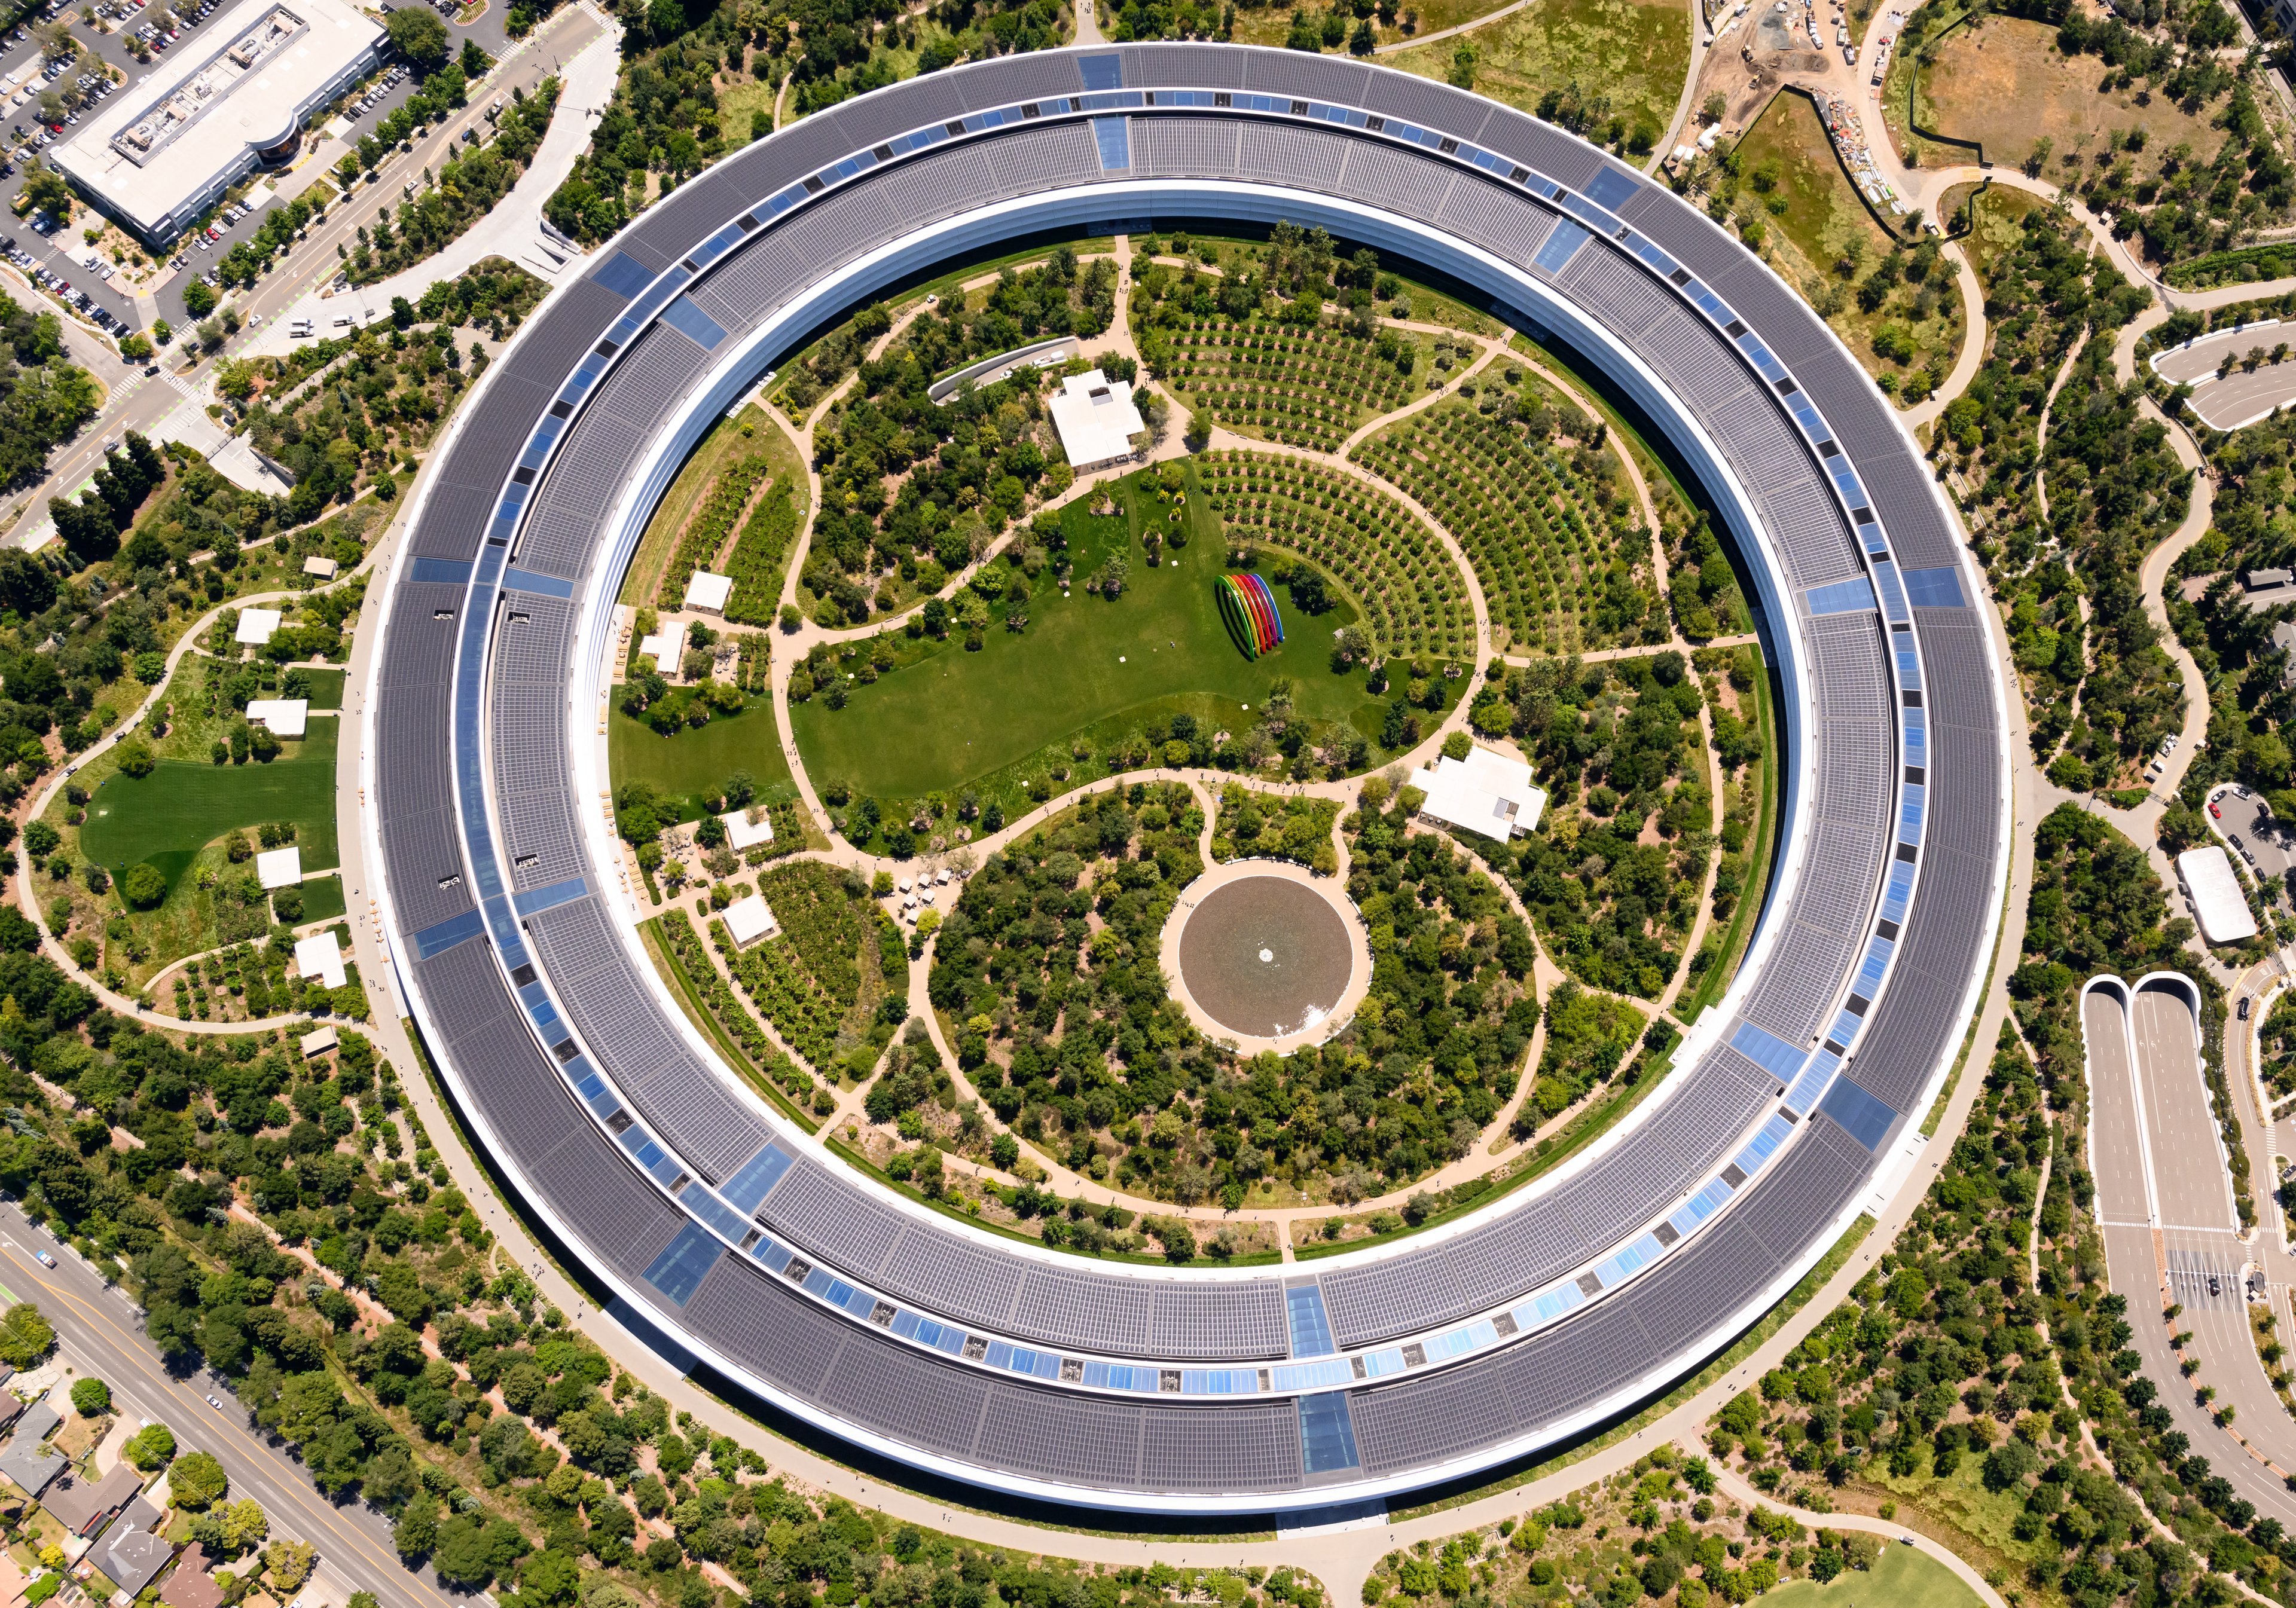 O complexo ocupa uma área de 175 acres e é conhecido como o "anel espacial" devido ao seu design circular futurista.